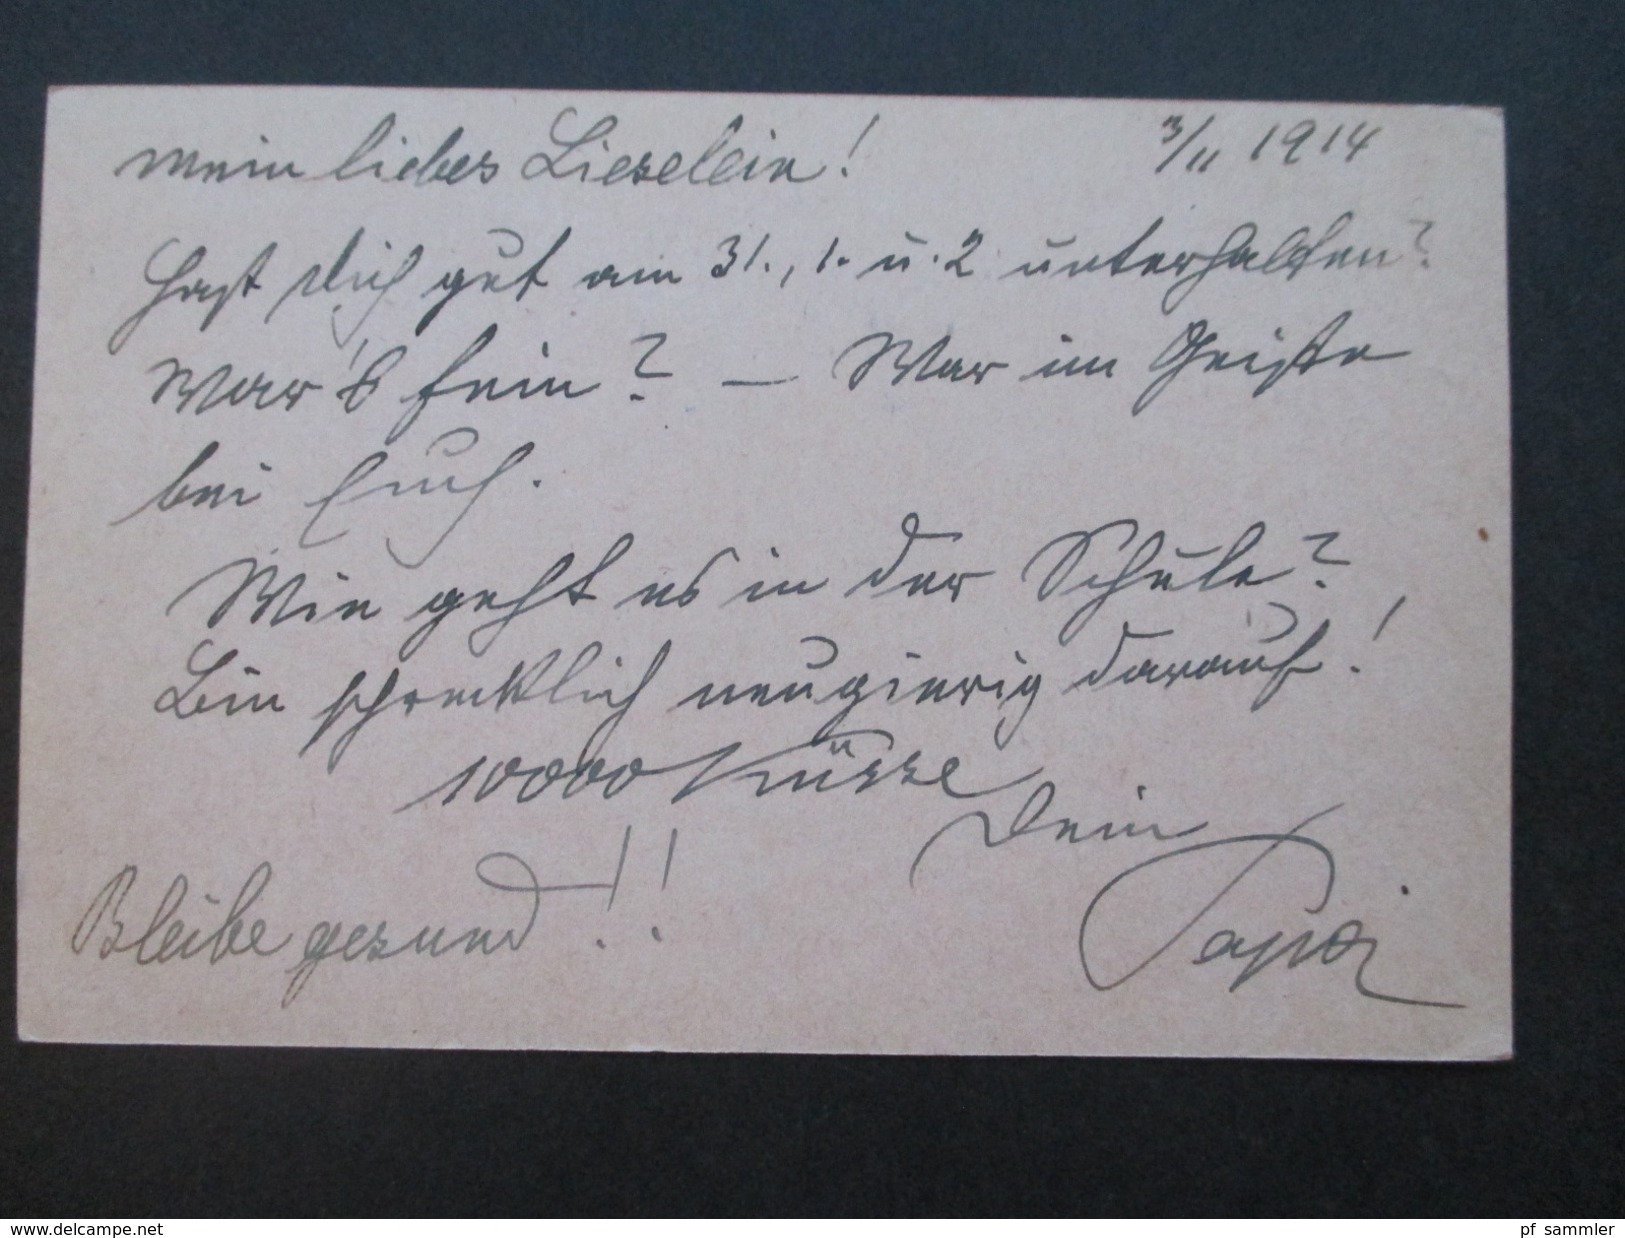 Österreich 1914/15 Felpost Korrespondenz Major Hubel Von Olengo. Mährisch Ostrau / Krakau. Baronesse / K.u.K. Offizier - Lettres & Documents